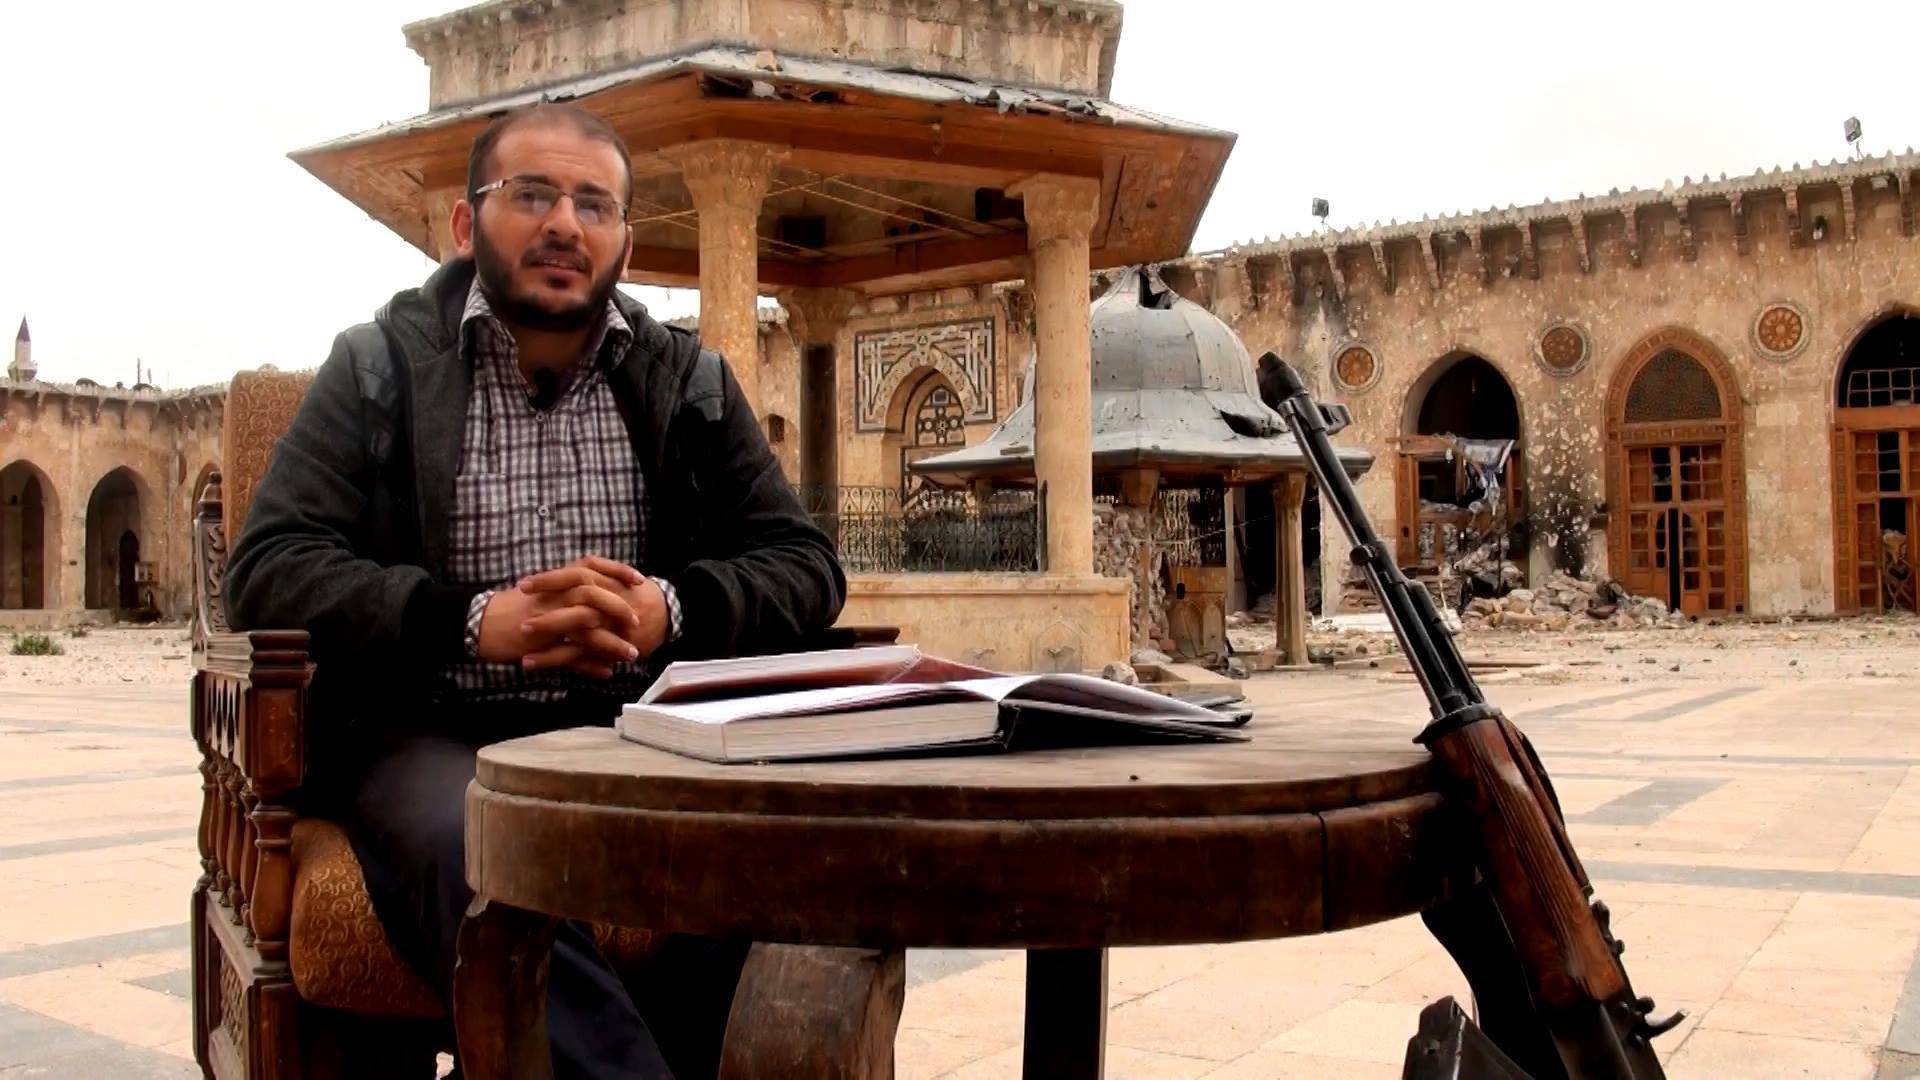 داعش يتبنى إطلاق النار على الإعلامي السوري زاهر الشرقاط في تركيا.. ومقربون منه: استطاع تجنيب الناس الانضمام للتنظيم